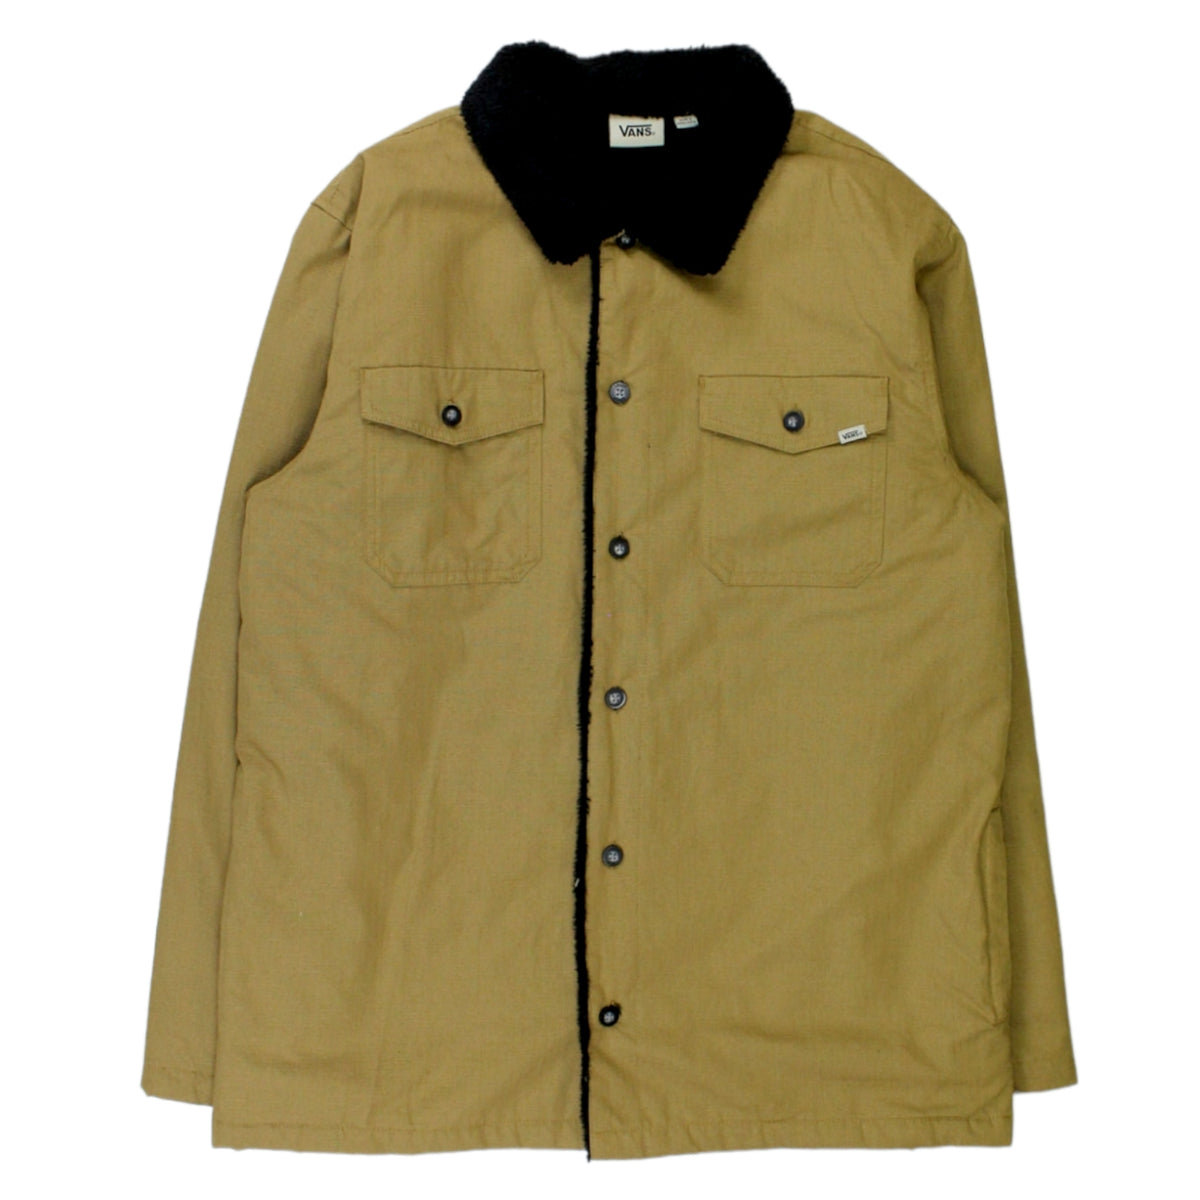 Vans Brown Fleece Lined Jacket